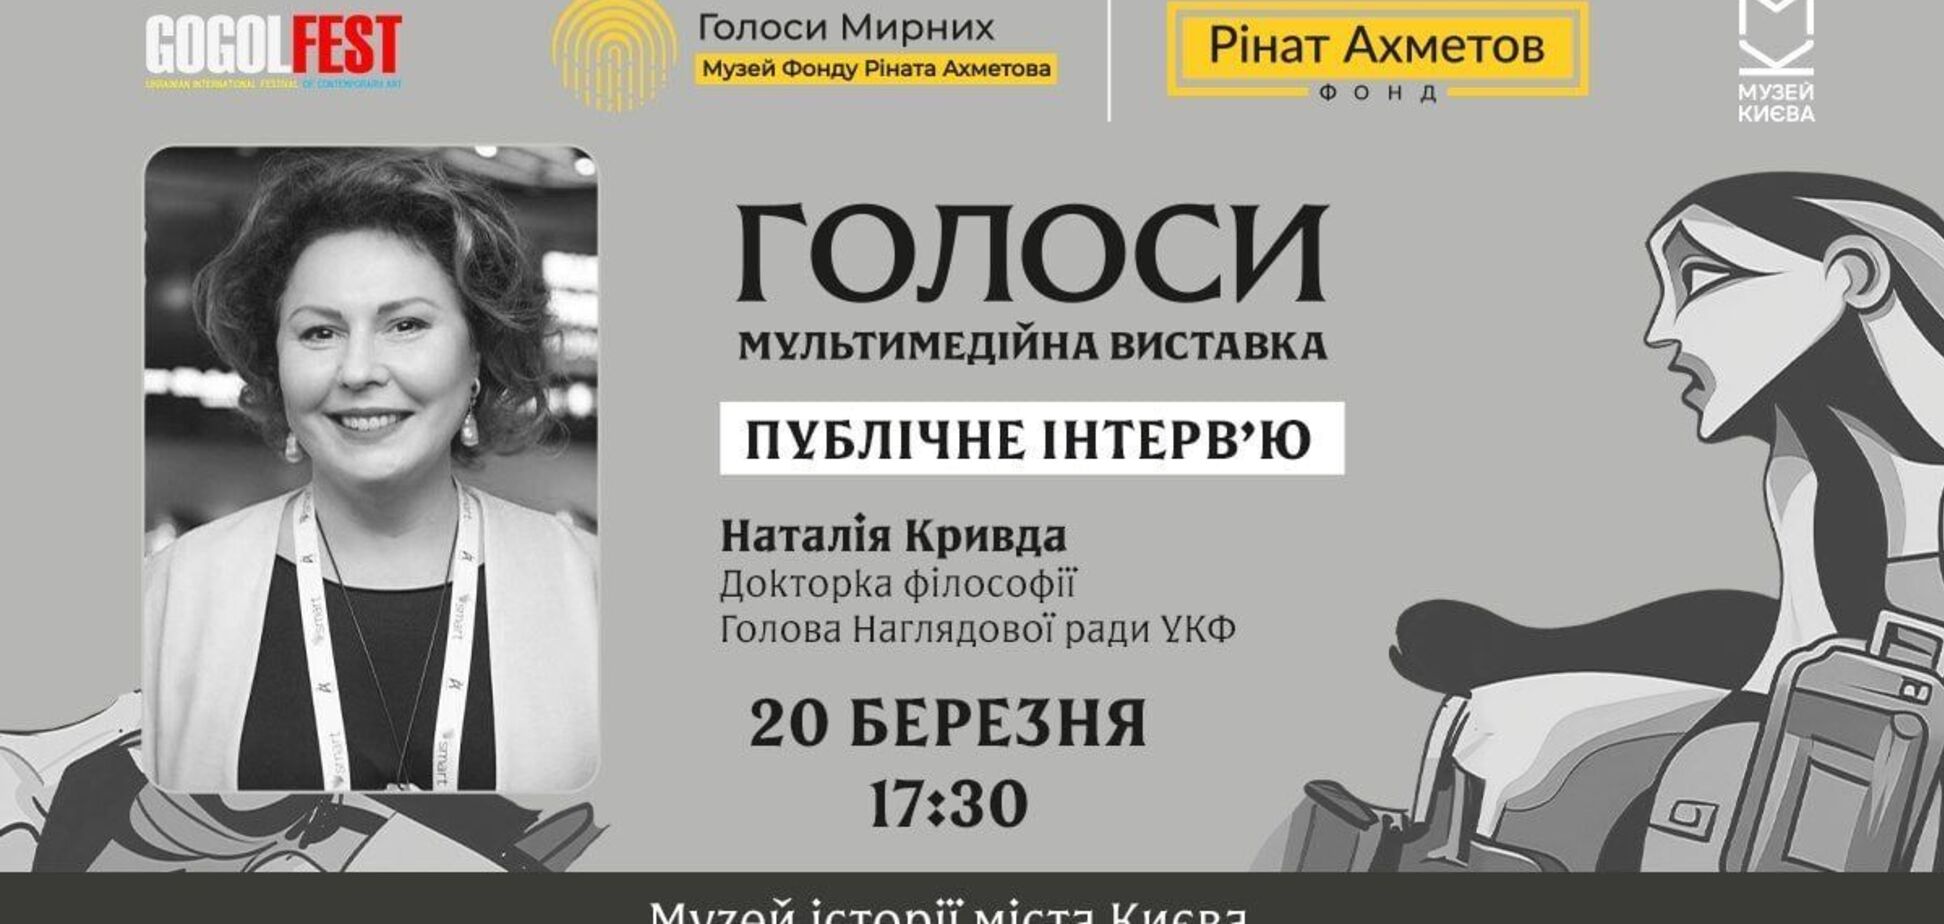 Диалоги о памяти: глава УКФ Кривда даст интервью в рамках выставки 'Голоса' музея 'Голоса мирных' Фонда Рината Ахметова